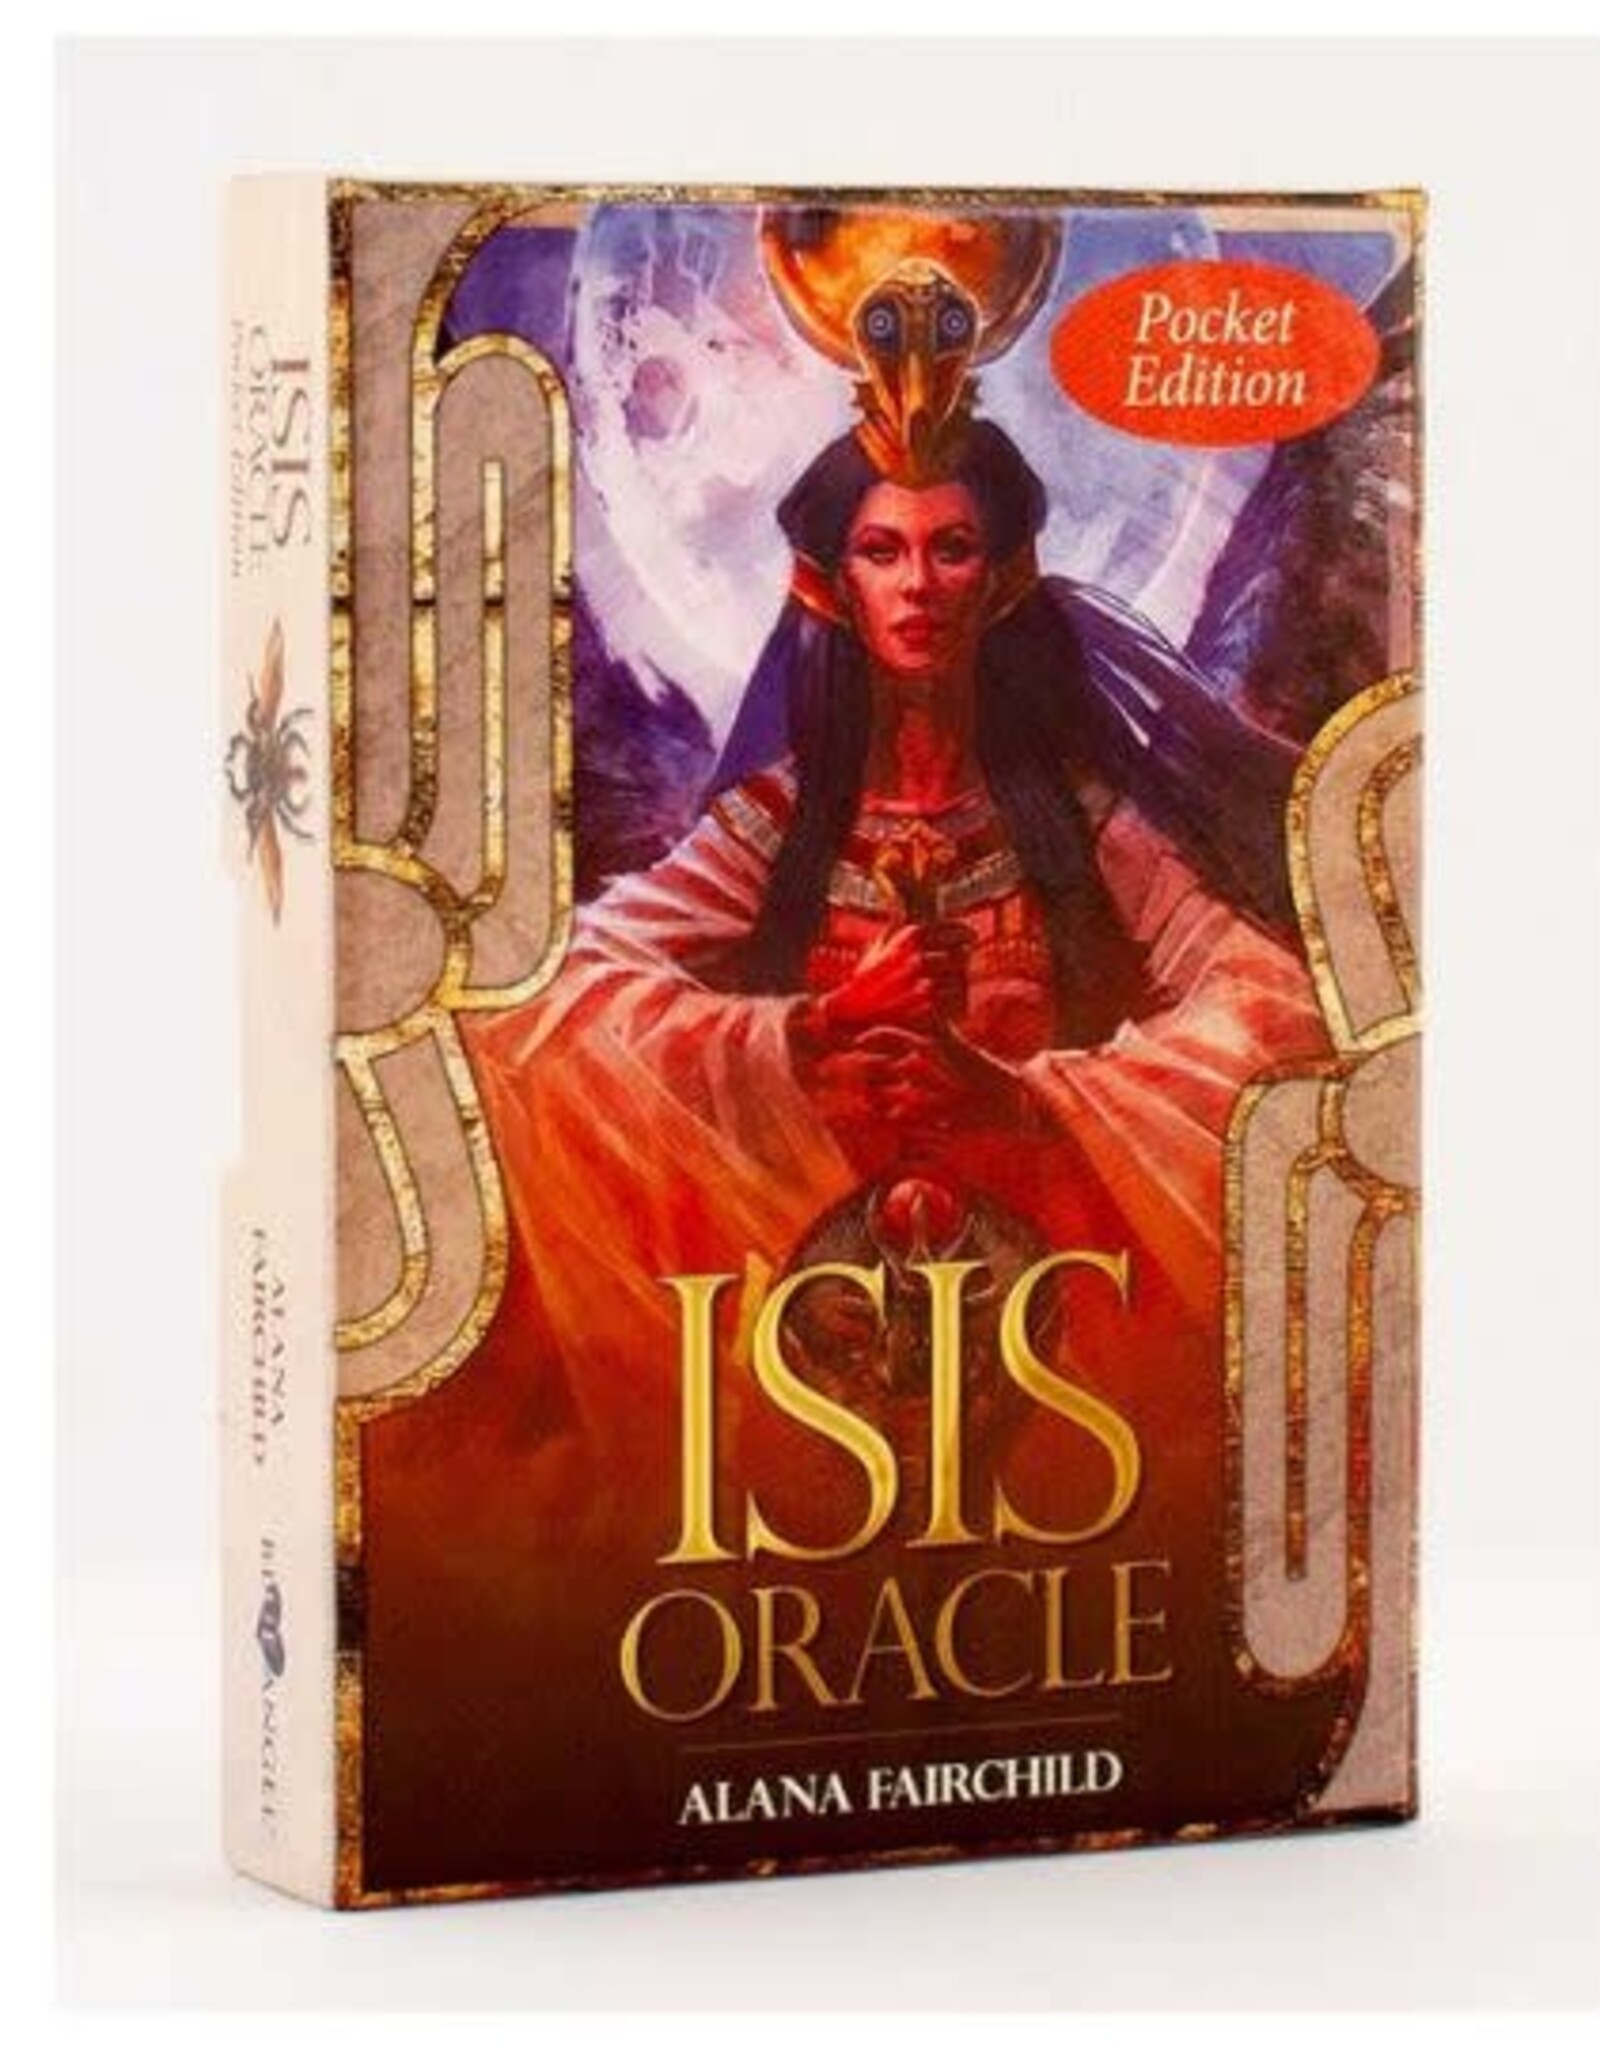 Alana Fairchild Isis Oracle (Pocket Edition) by Alana Fairchild